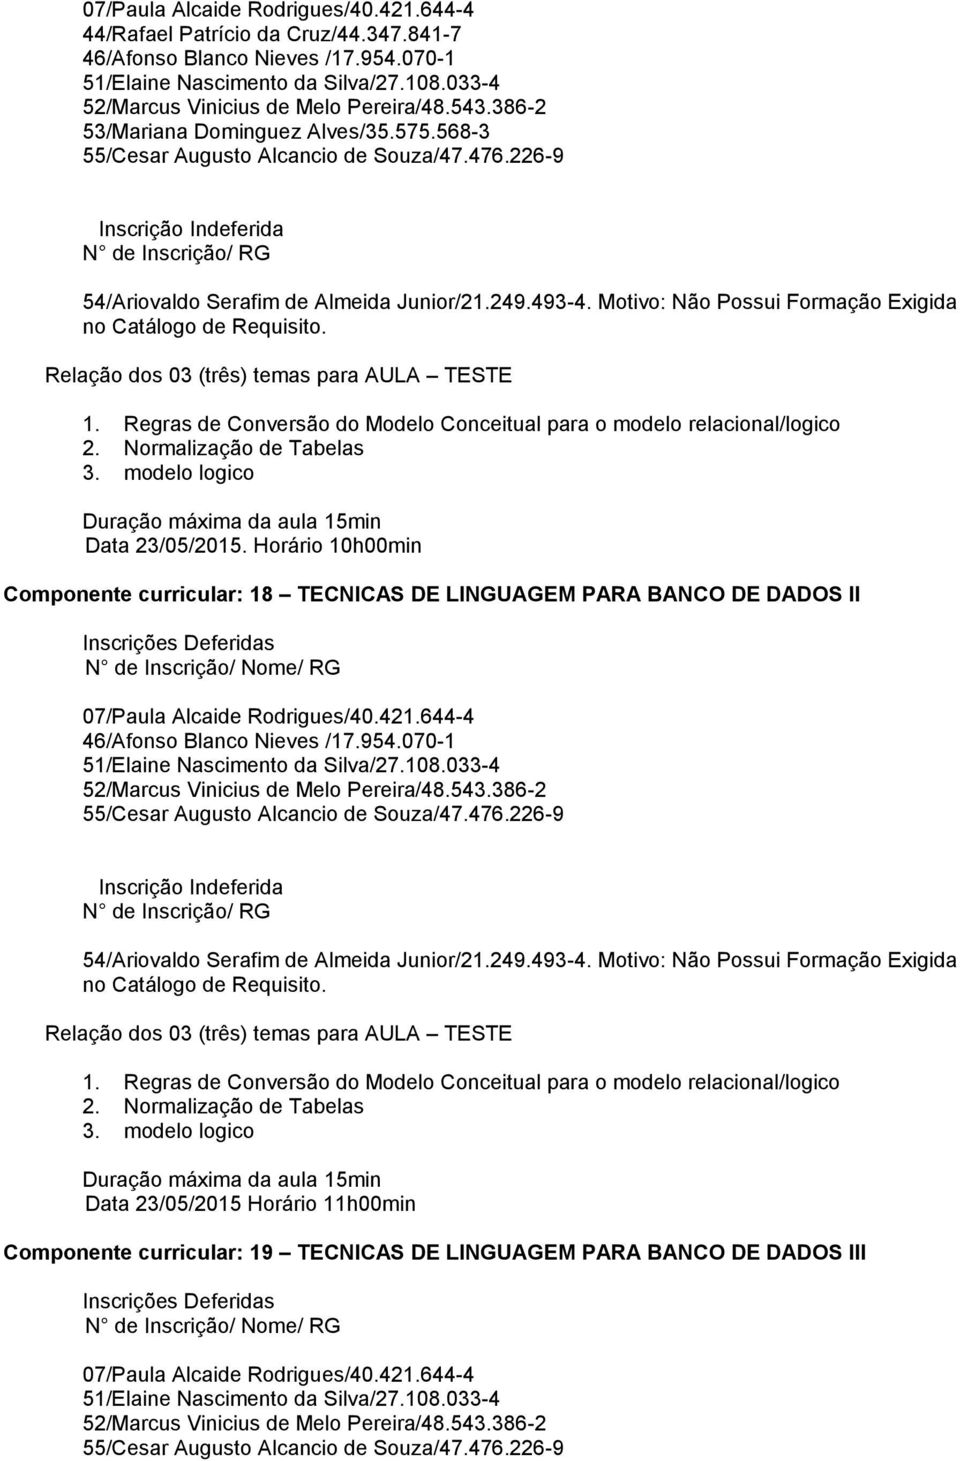 Horário 10h00min Componente curricular: 18 TECNICAS DE LINGUAGEM PARA BANCO DE DADOS II 46/Afonso Blanco Nieves /17.954.070-1 1.